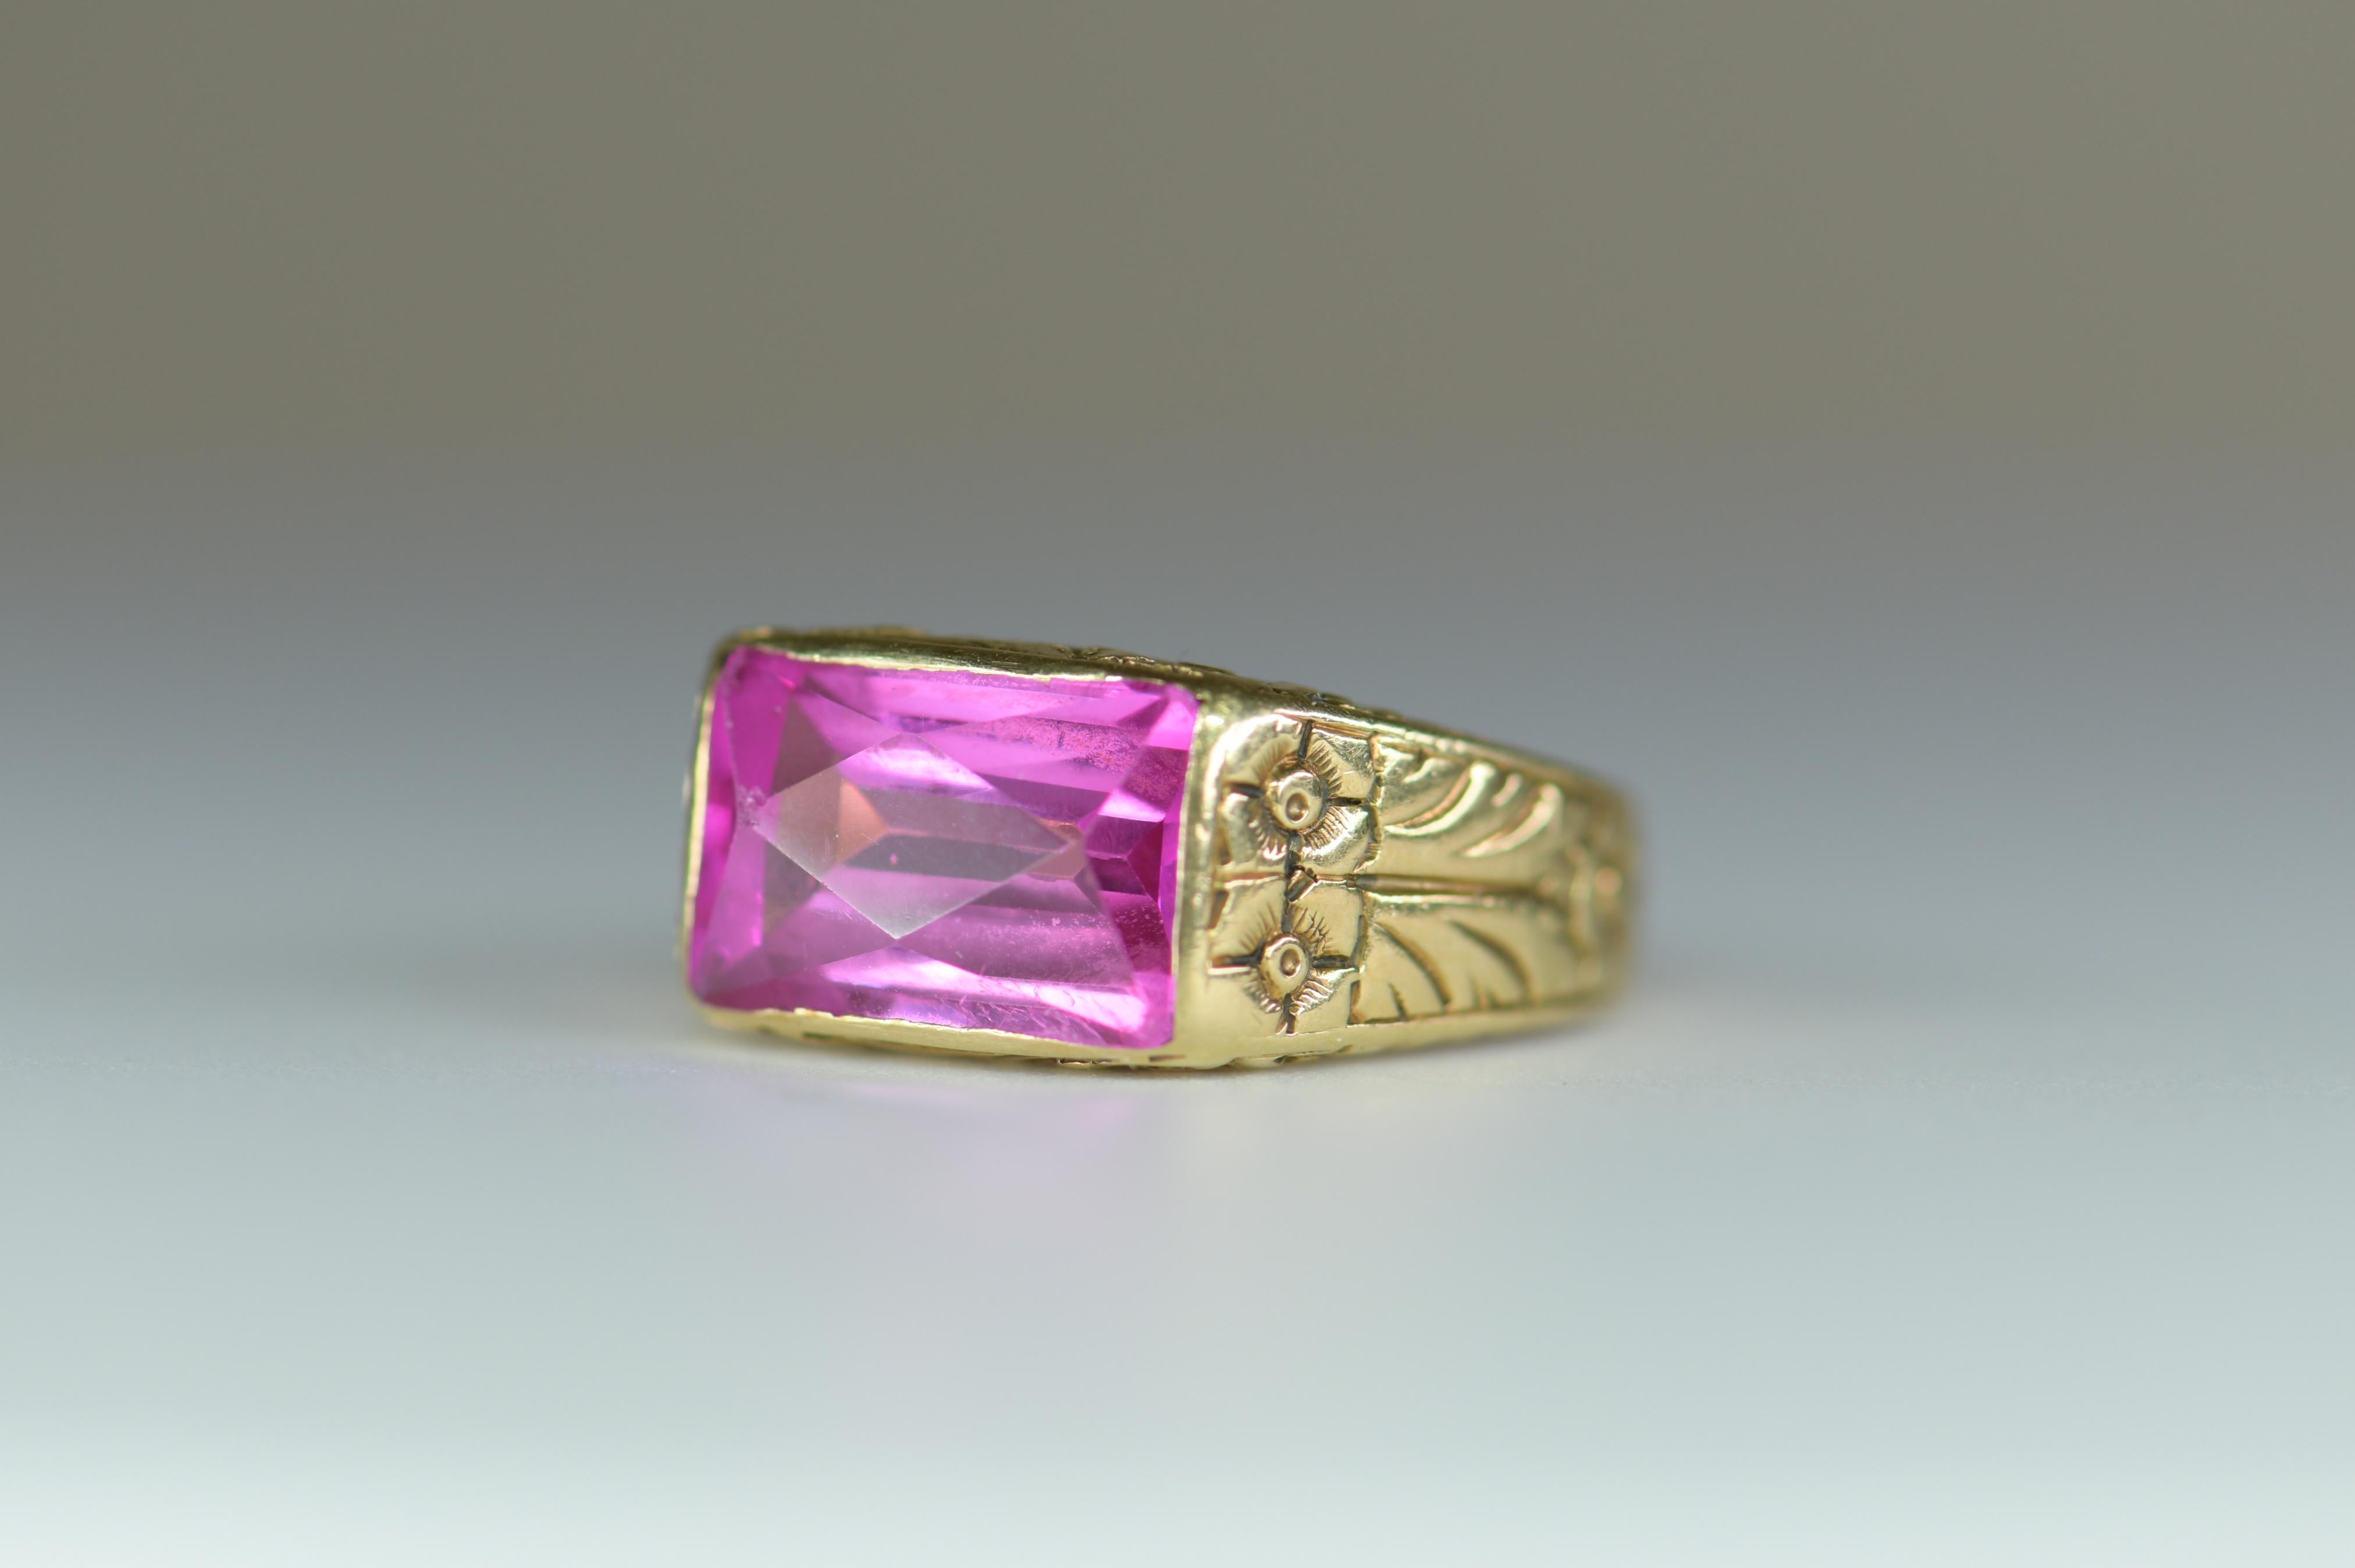 Cette bague au design floral gravé à l'ancienne présente un quartz rose vibrant de 12 mm x 7 mm. Un brillant quartz rose émeraude rose sarcelle électrique est magnifiquement présenté dans de l'or gravé.  Le bracelet en or jaune présente un motif